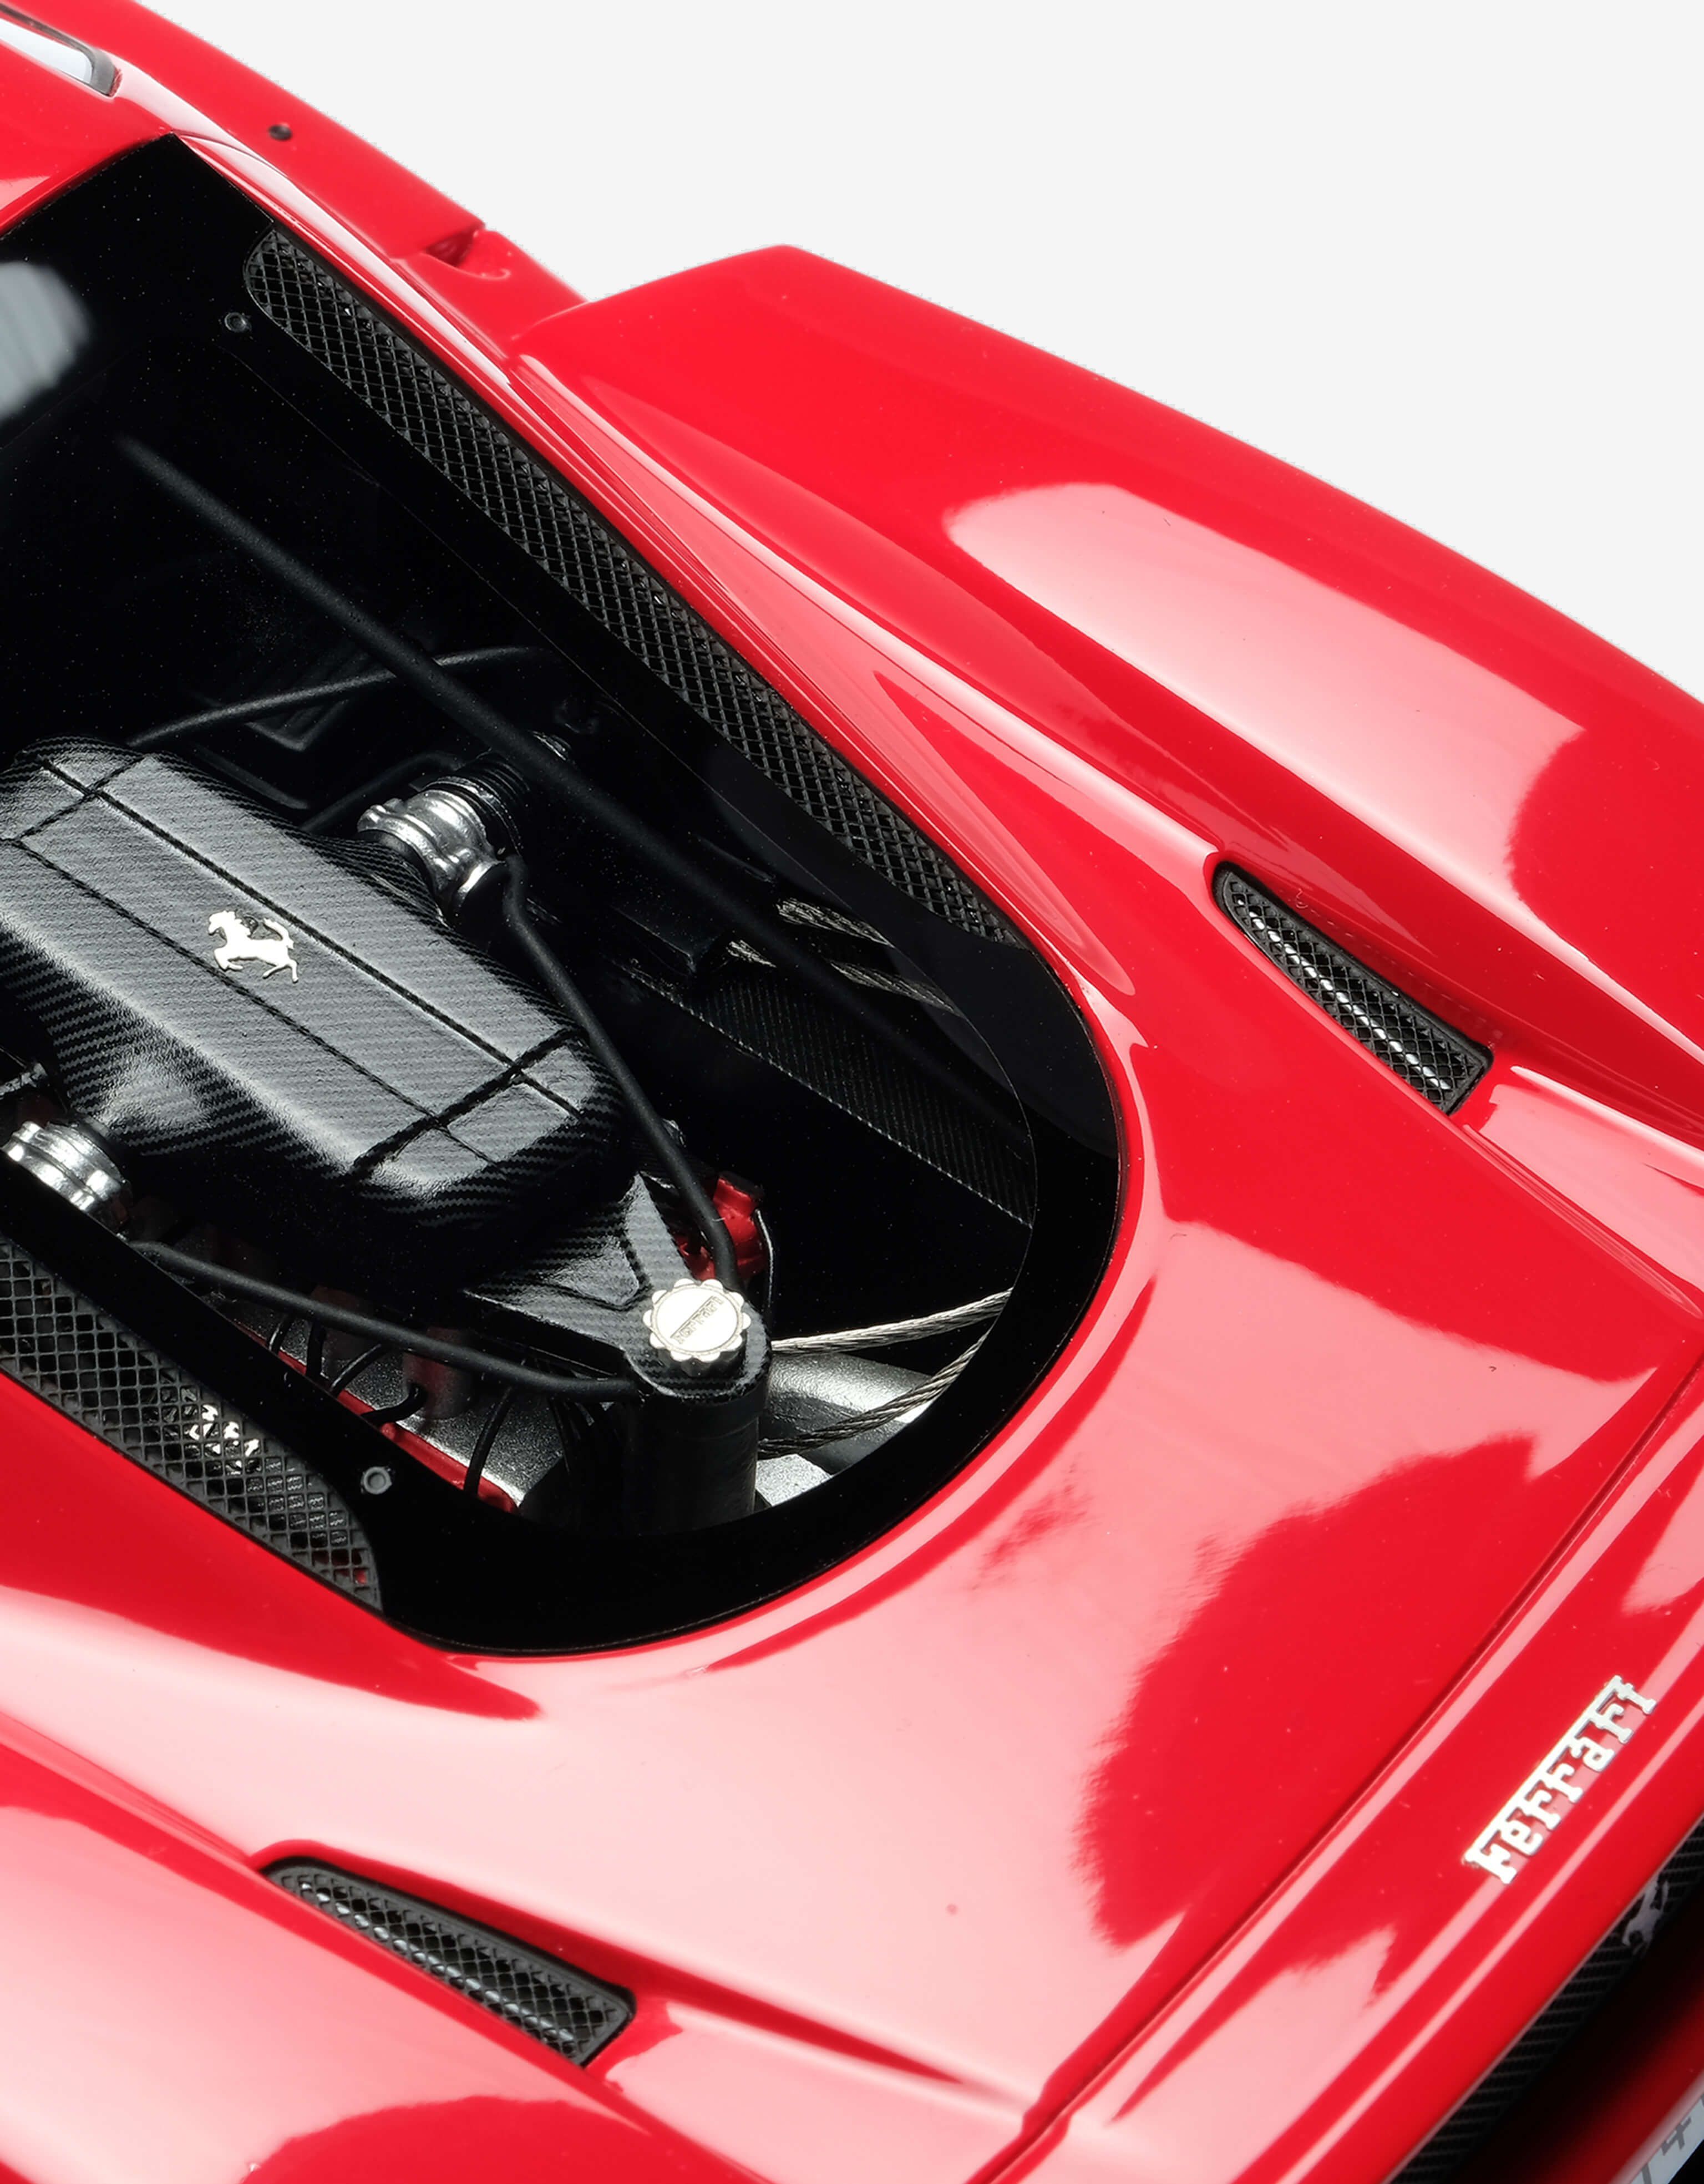 Ferrari Enzo Ferrari 1:18スケール モデルカー レッド L7814f